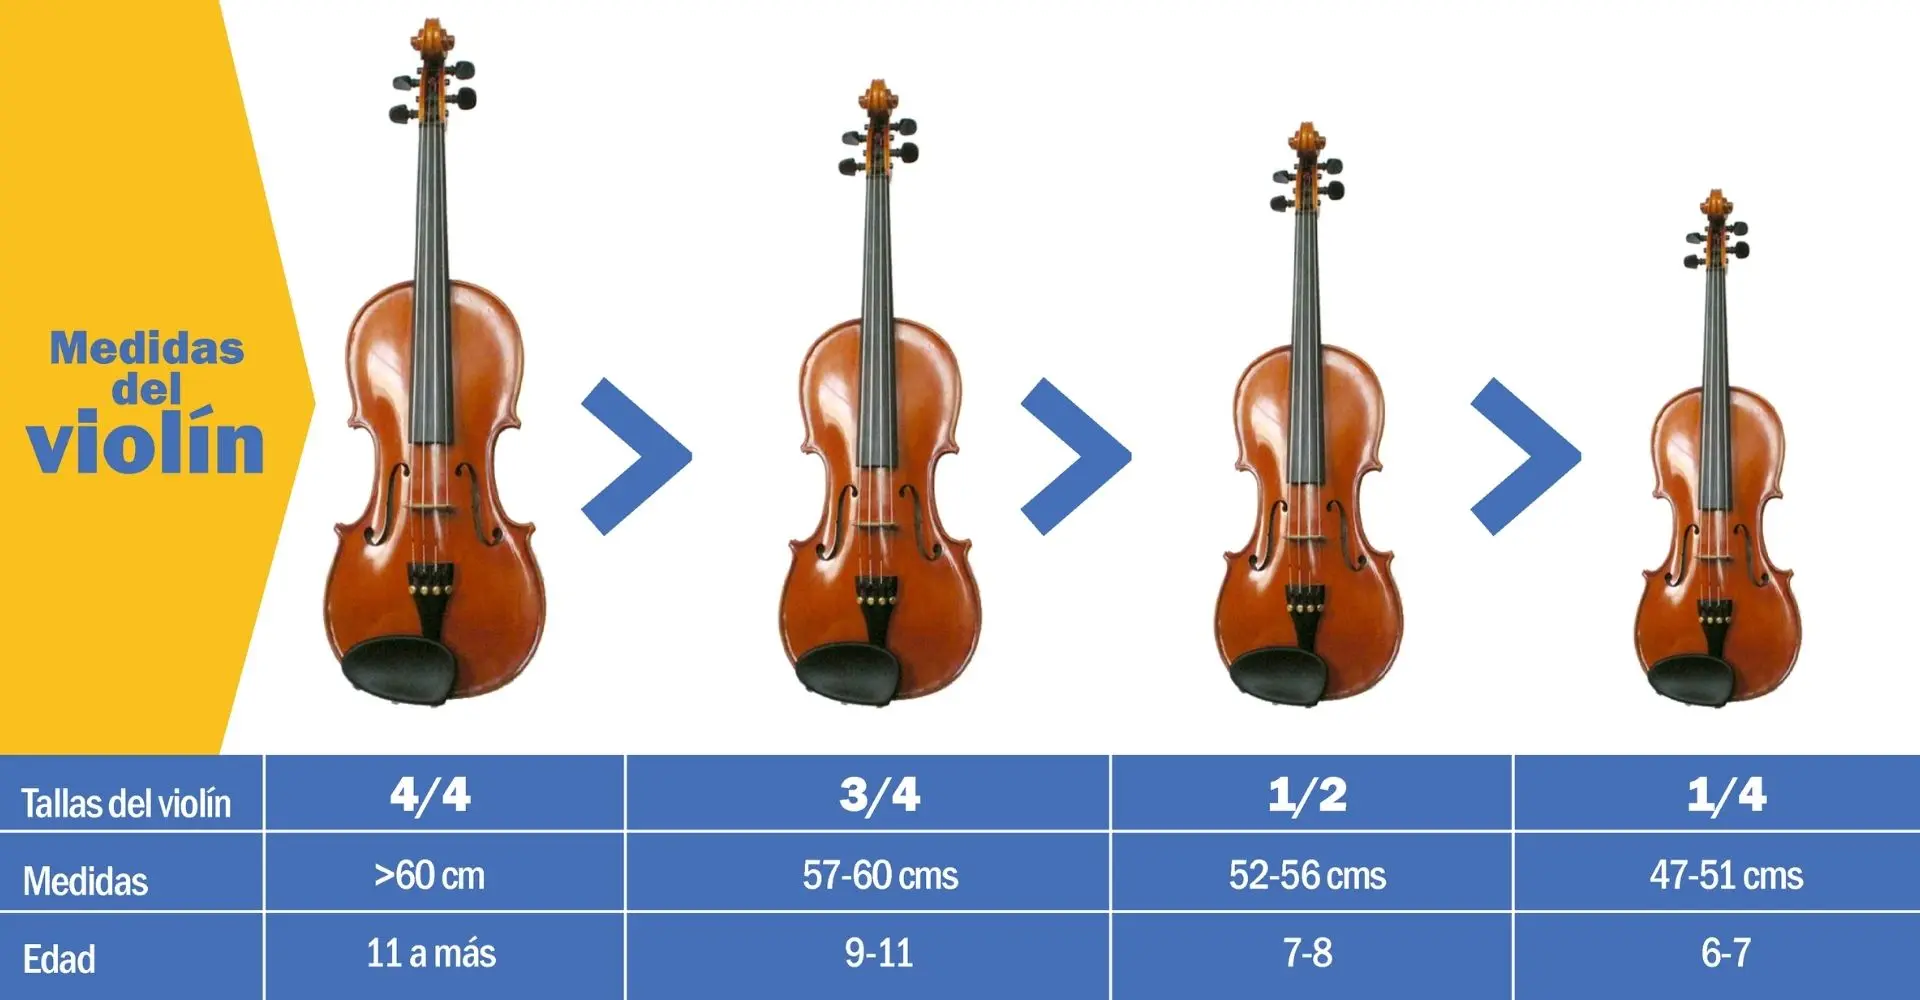 medidas de violin - Cómo saber si un violín es 3 4 o 4 4